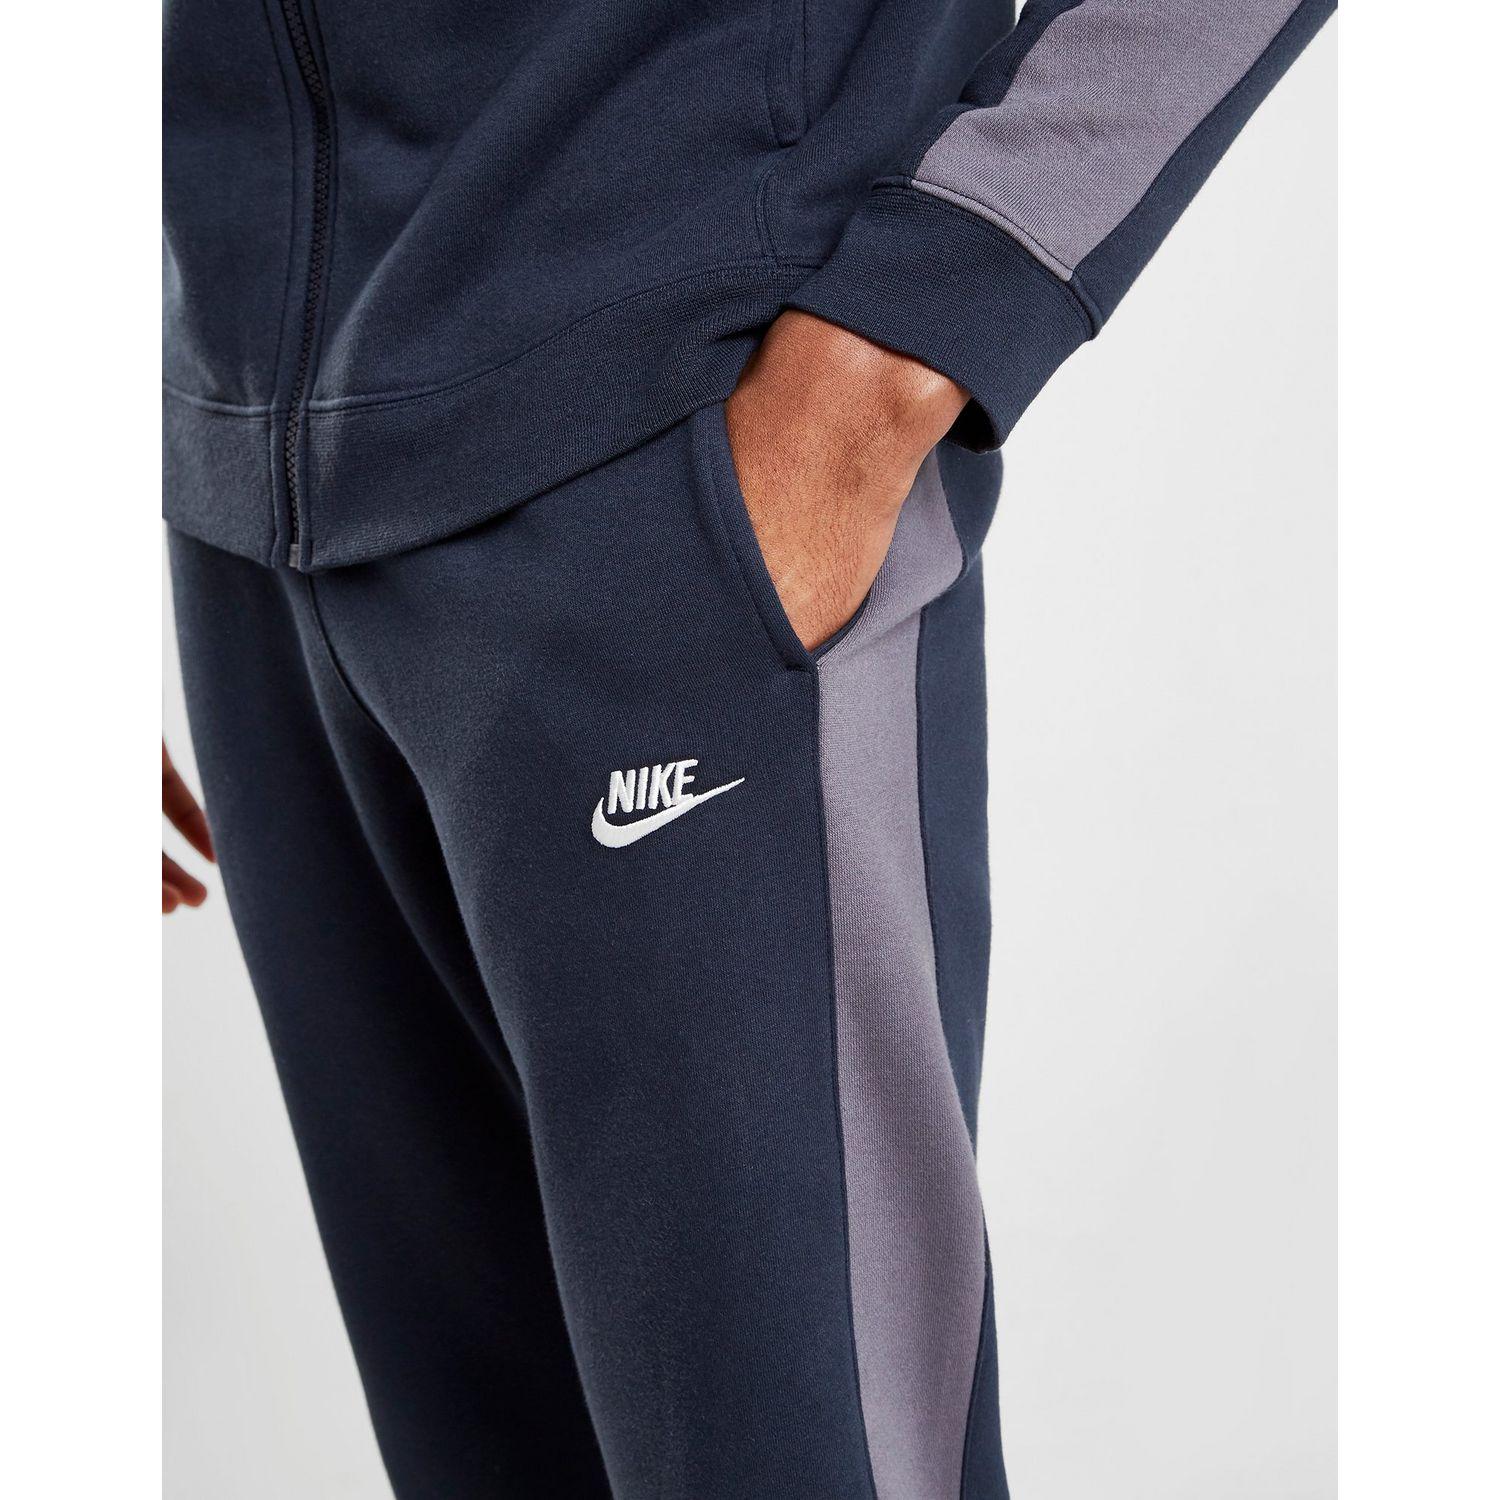 Nike League Fleece Tracksuit in Navy/Grey (Blue) for Men - Lyst